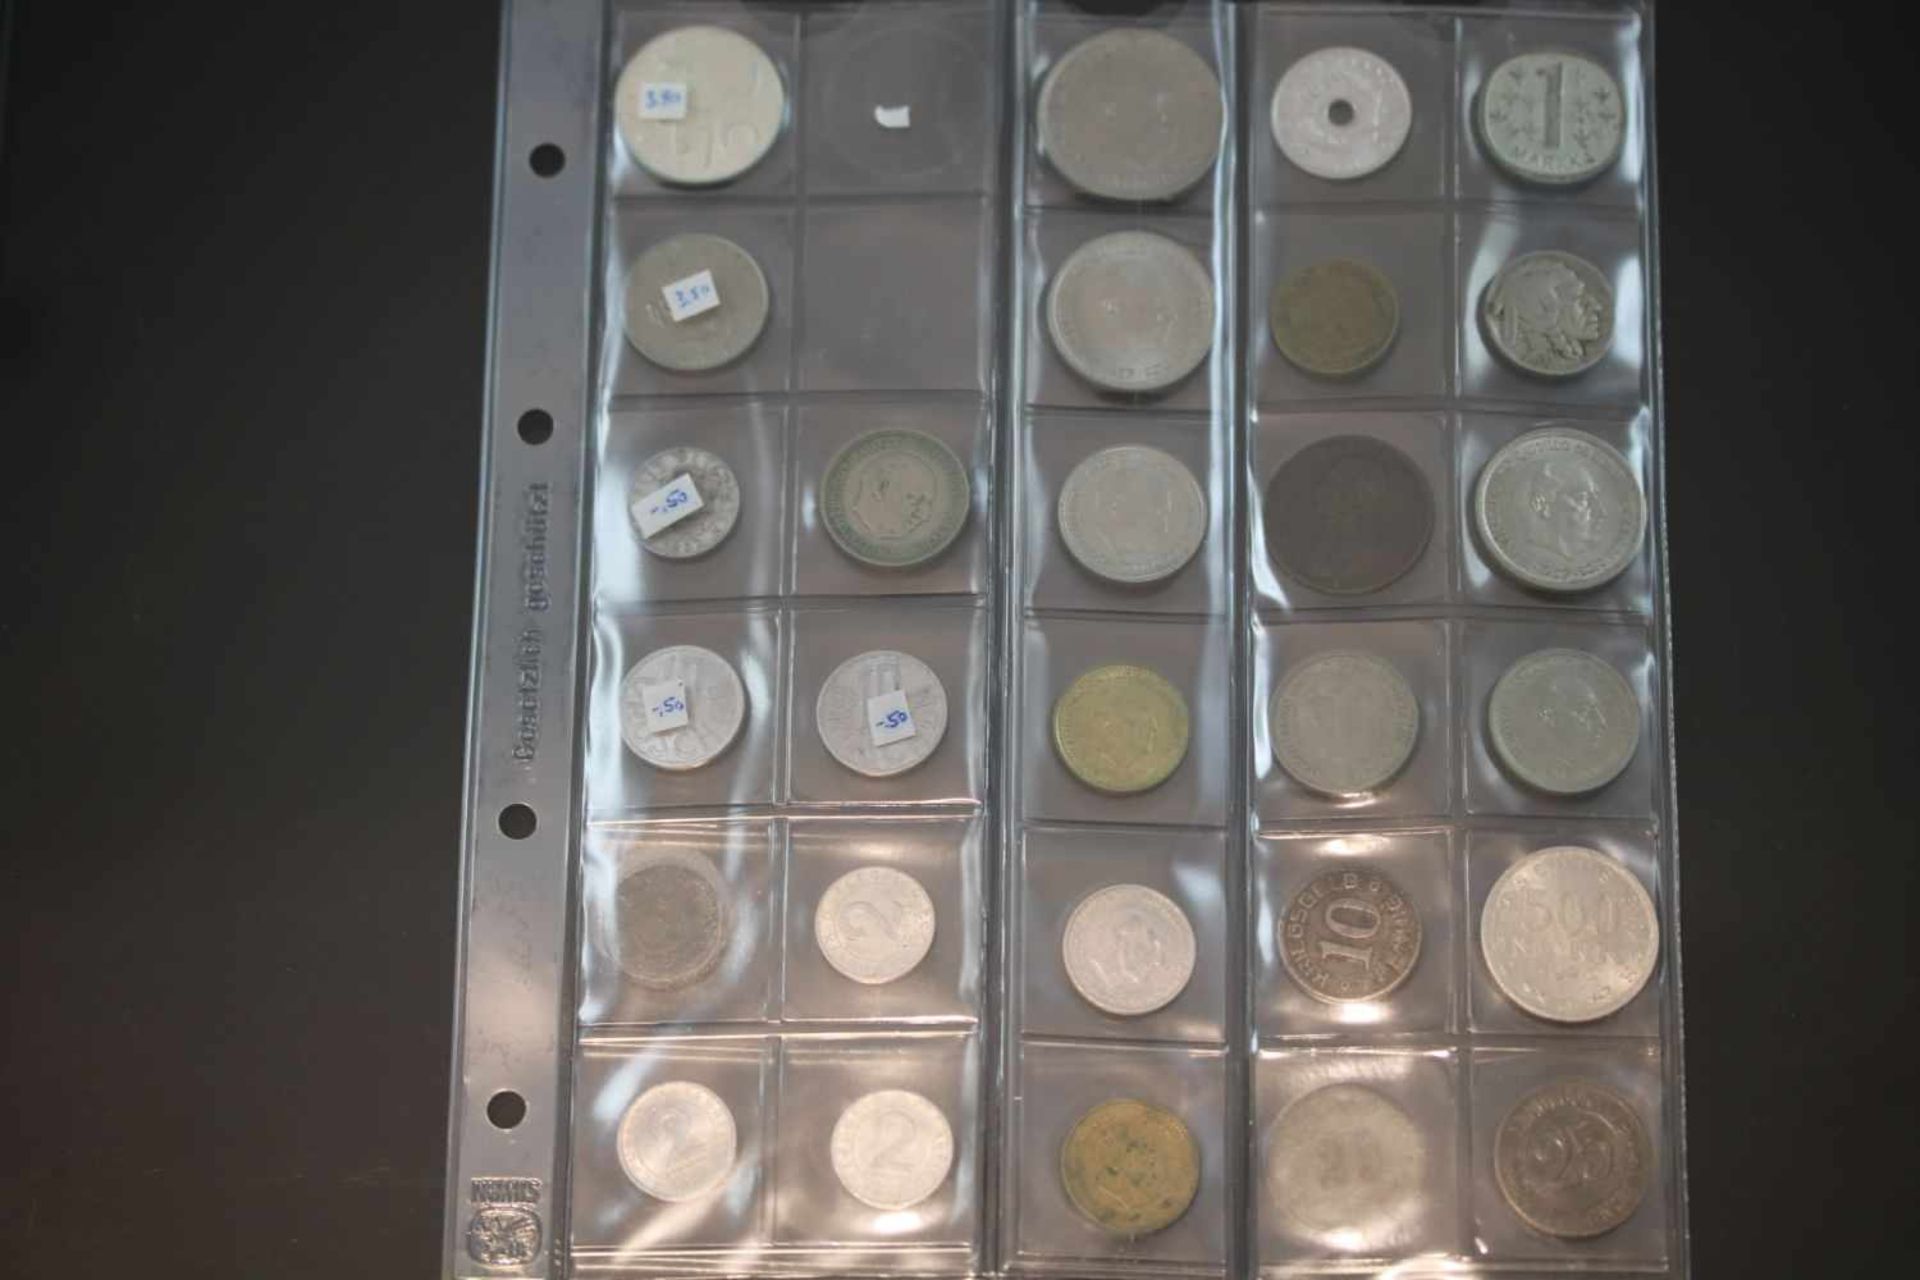 Münz-Konvolut28 Münzen diverser Währungen und Jahrgänge- - -25.00 % buyer's premium on the hammer